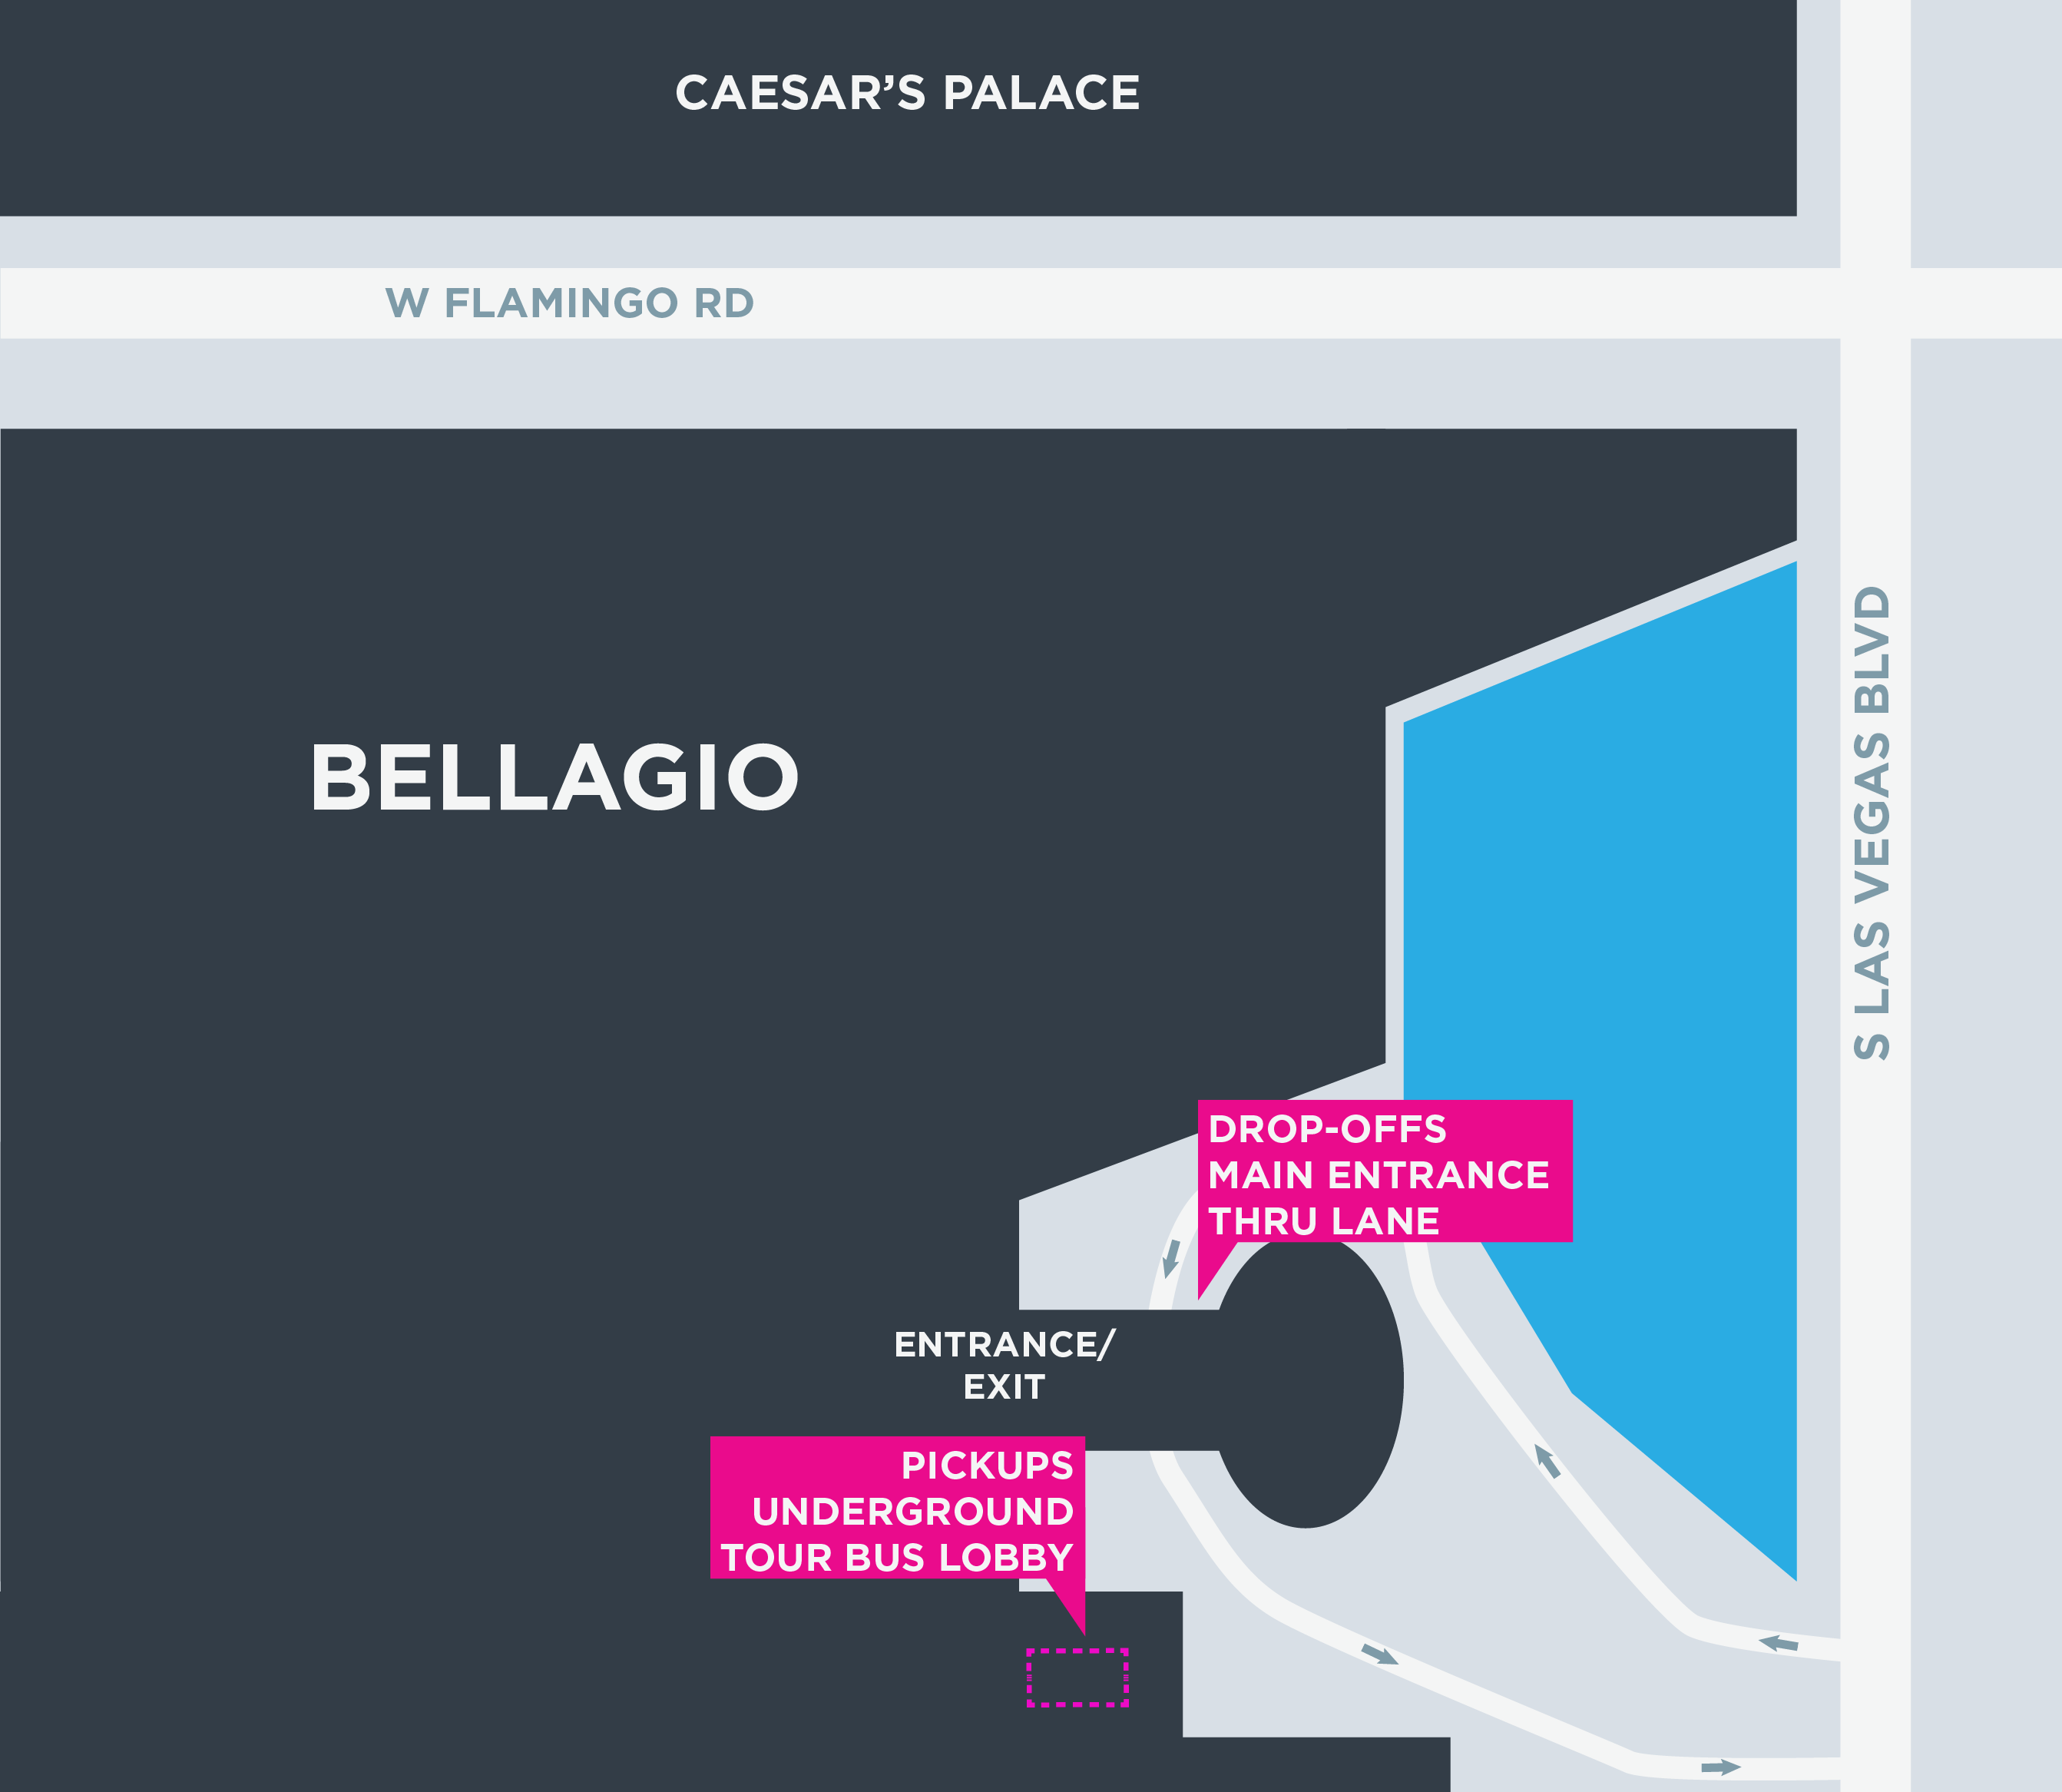 Esta imagem mostra um mapa do Bellagio, incluindo pontos de encontro e áreas de desembarque.